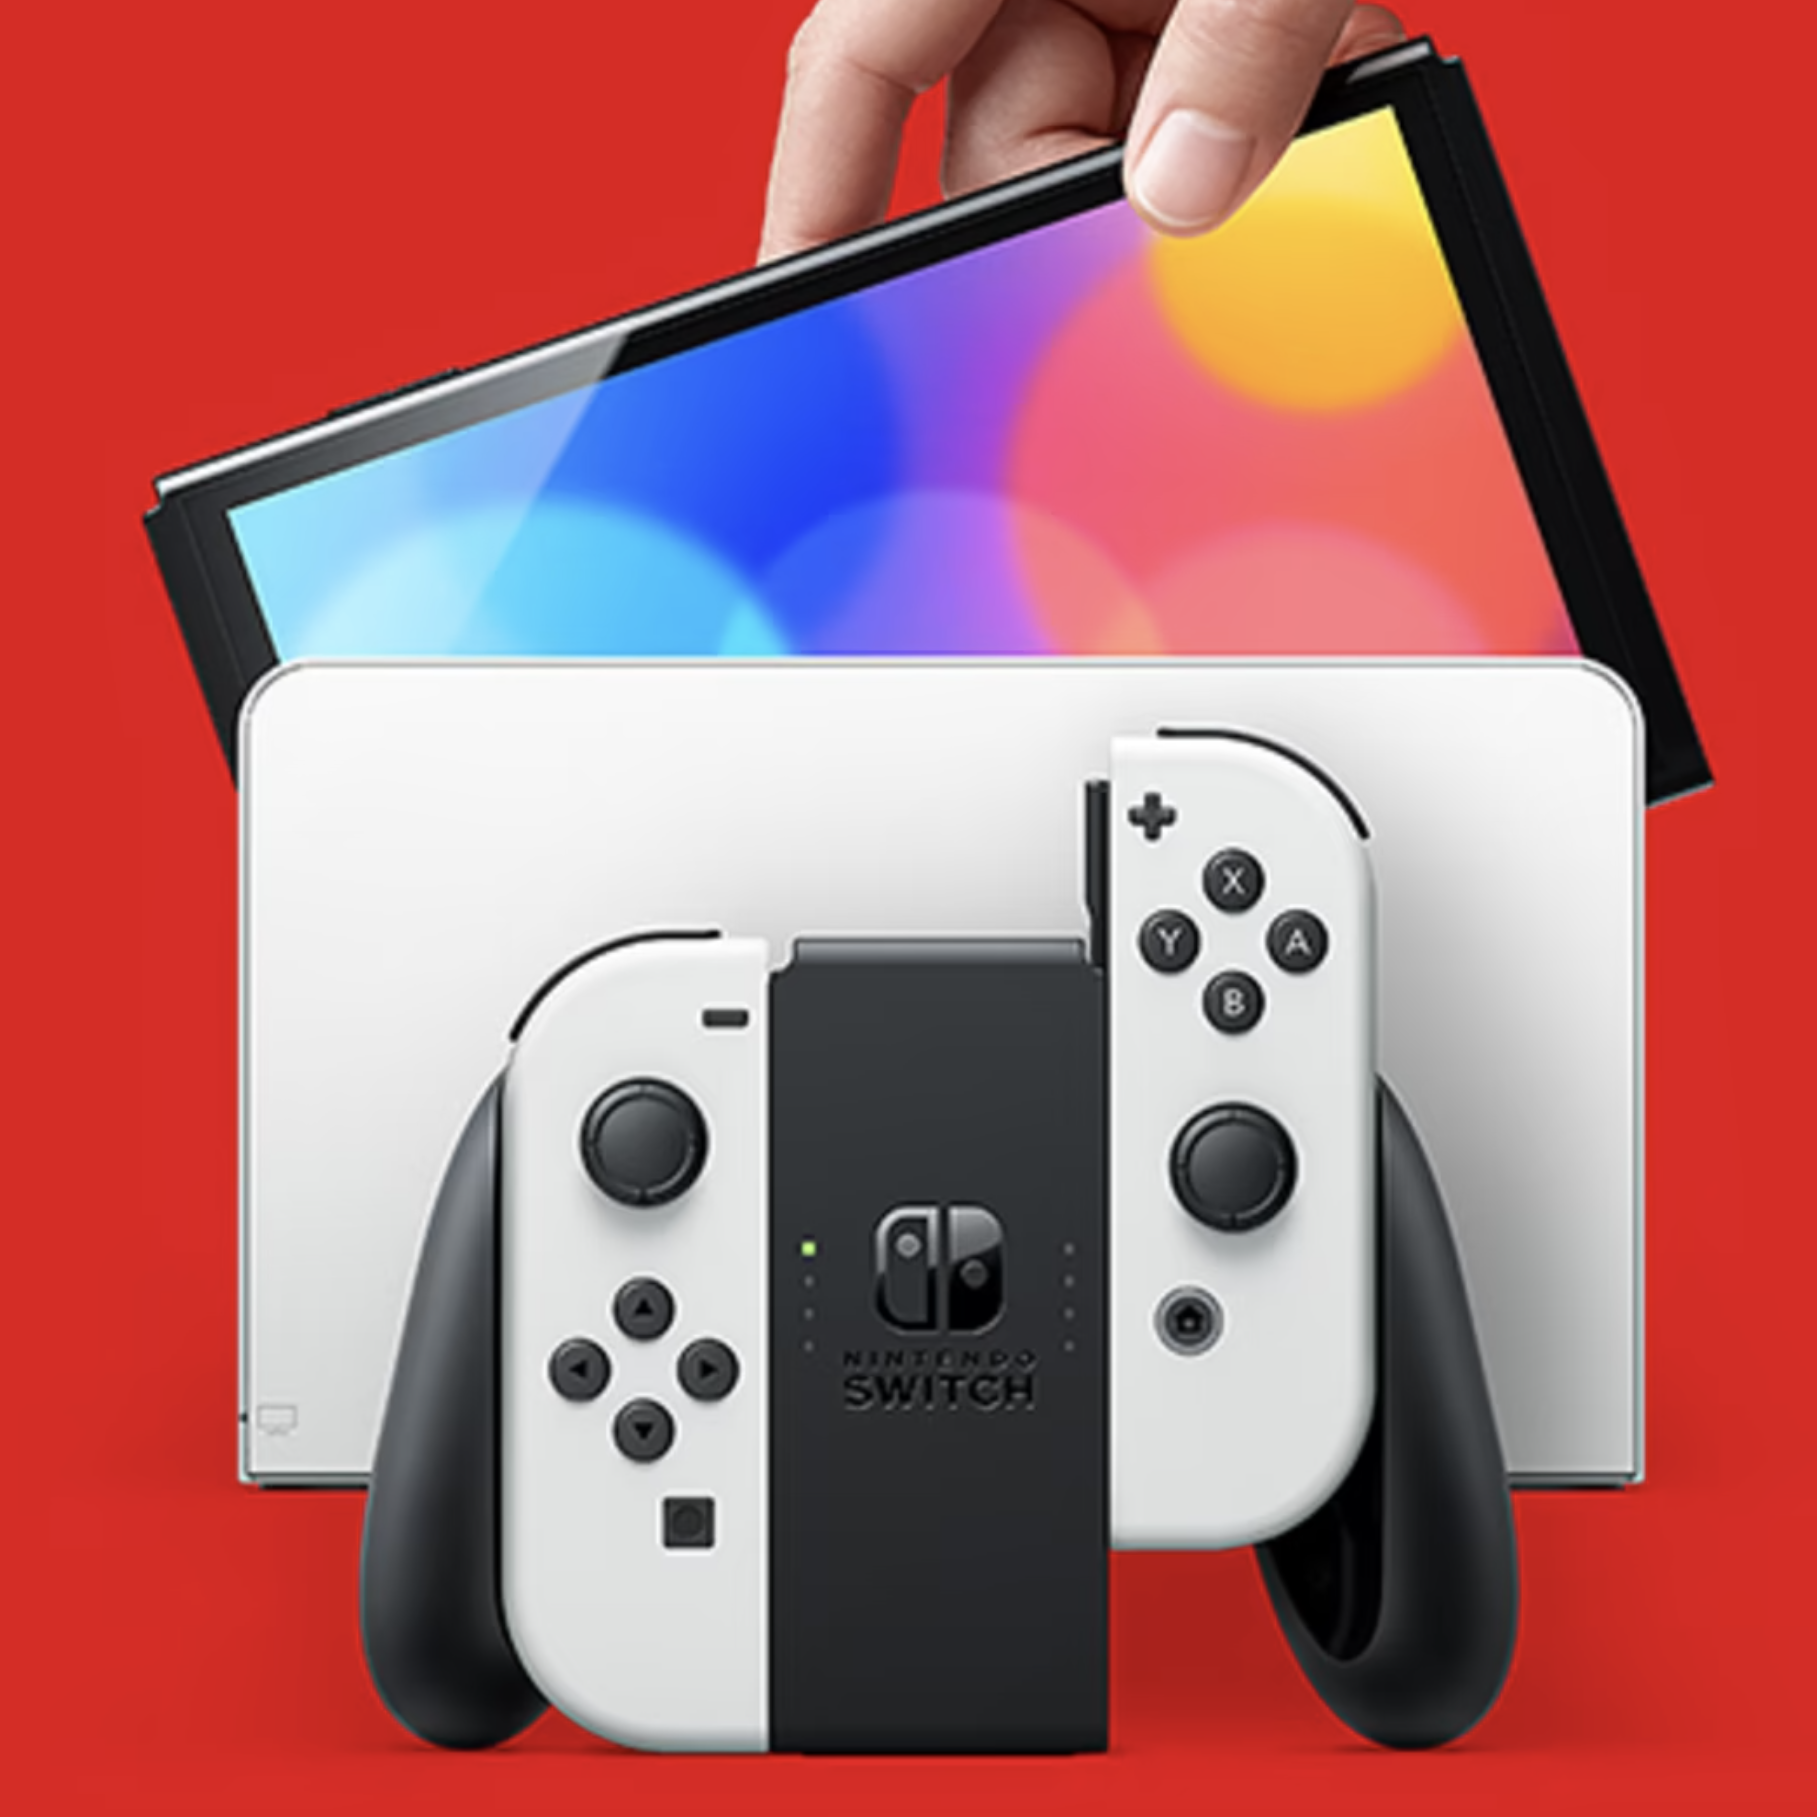 Console da gioco Nintendo Switch (modello OLED) – PREZZO RICHIESTO €1!